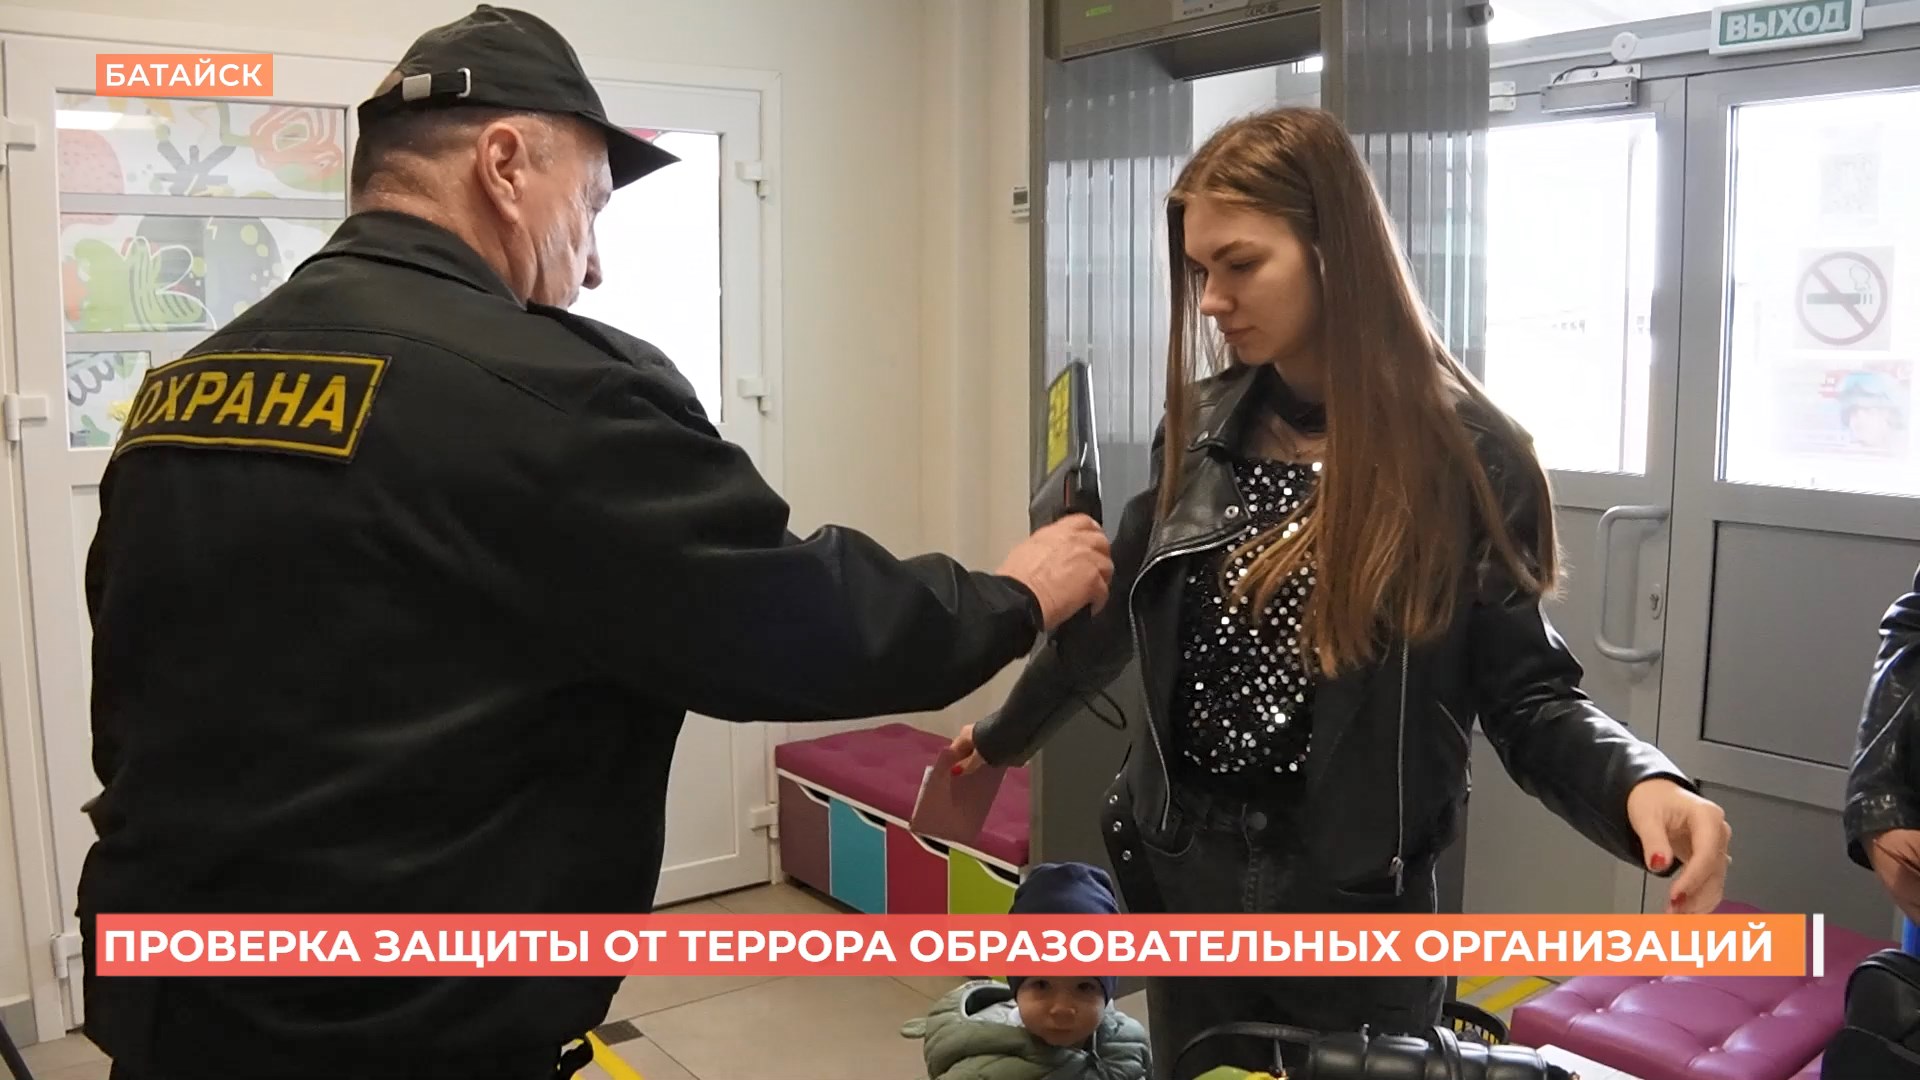 Внеплановые проверки  безопасности образовательных учреждений проходят  в Ростовской области